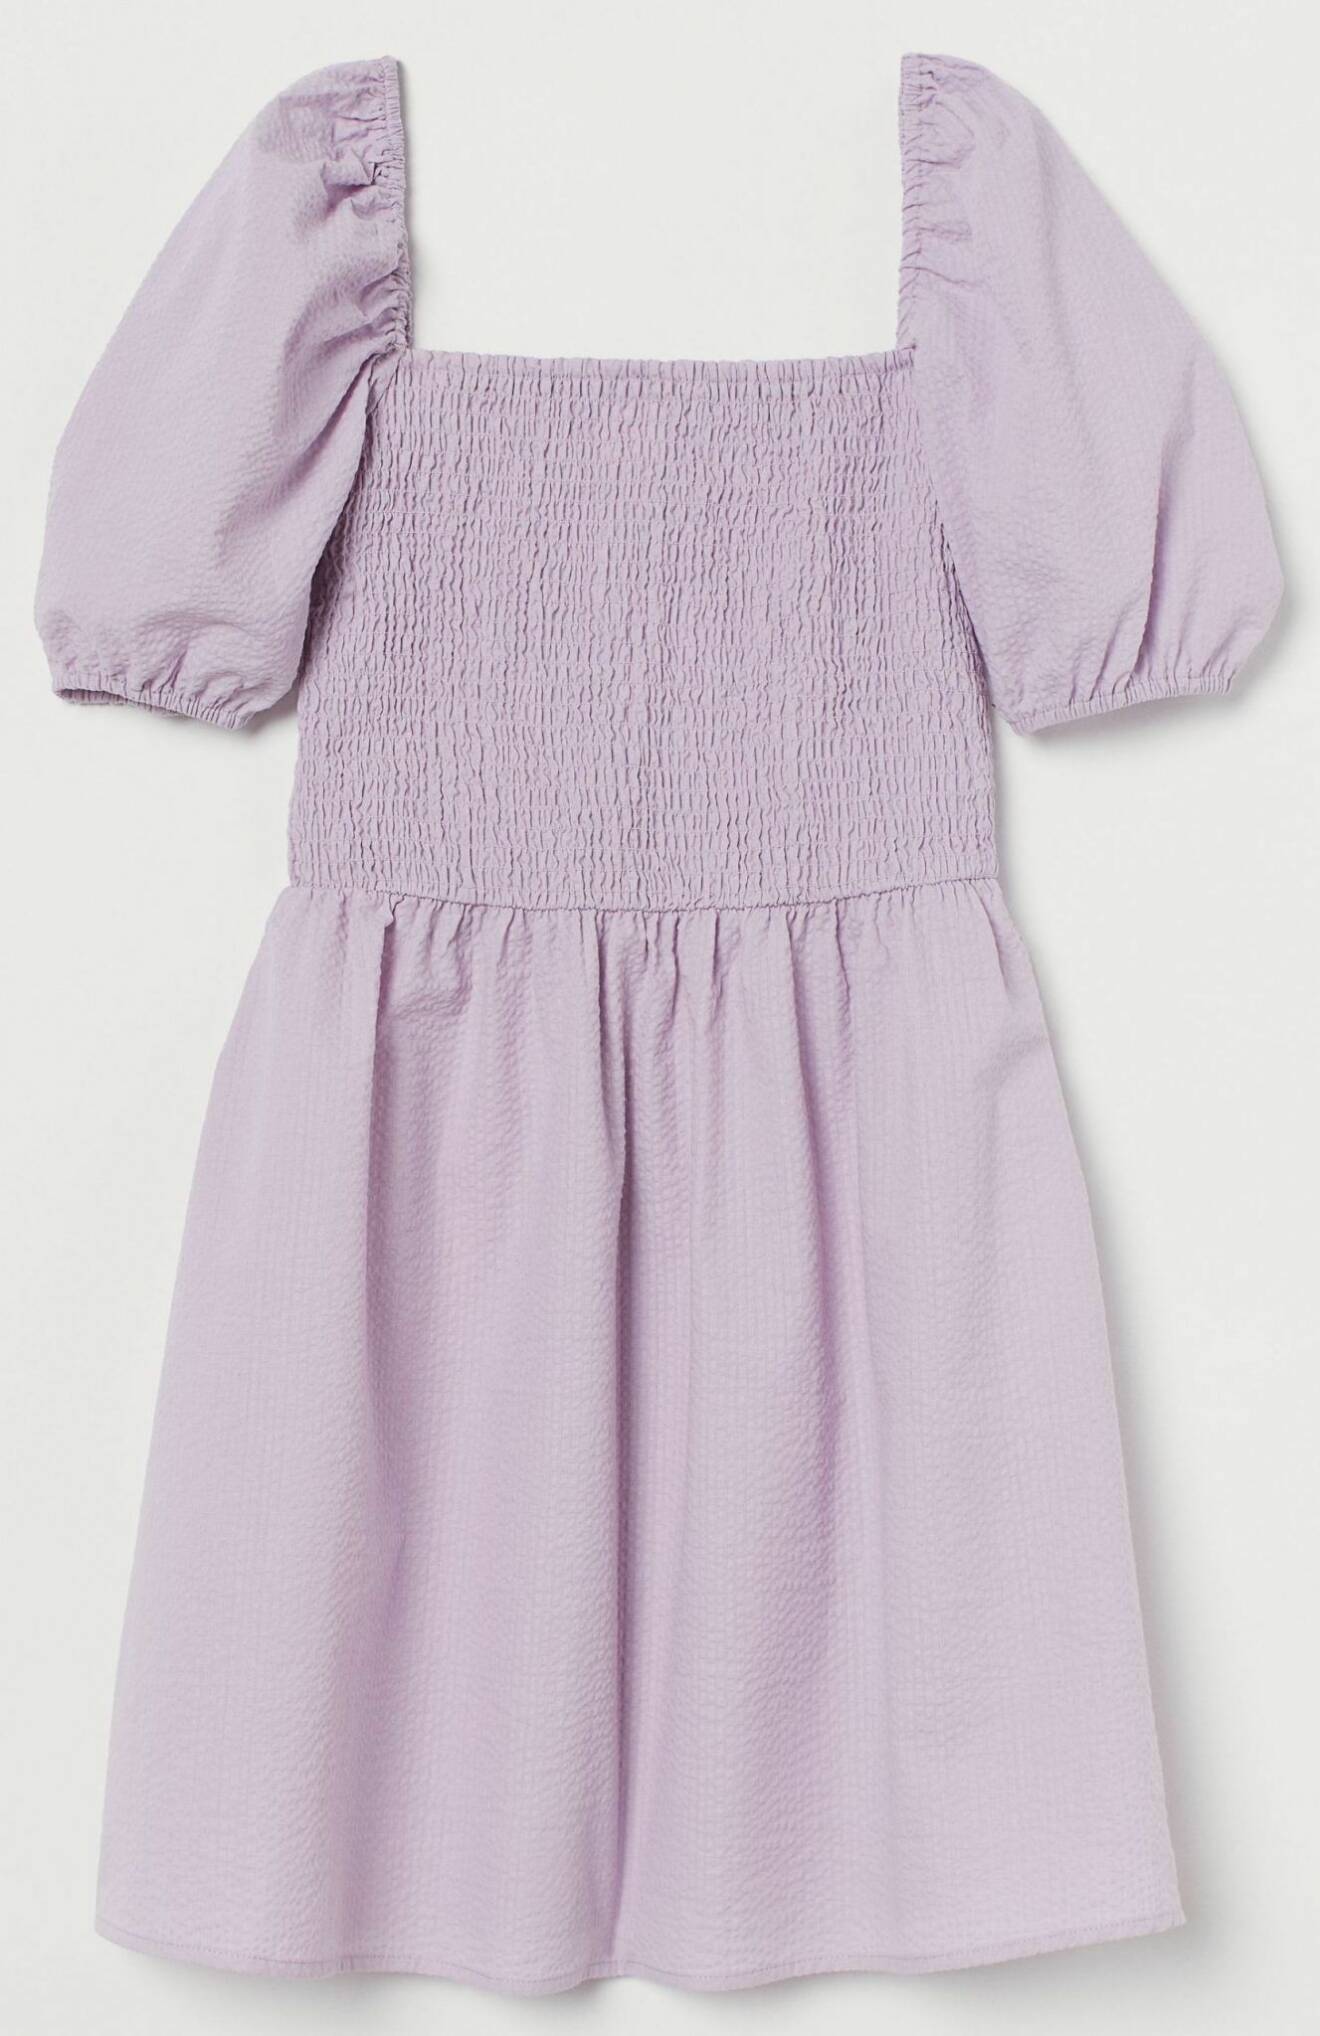 lavendelila klänning med puffärmar från H&M.